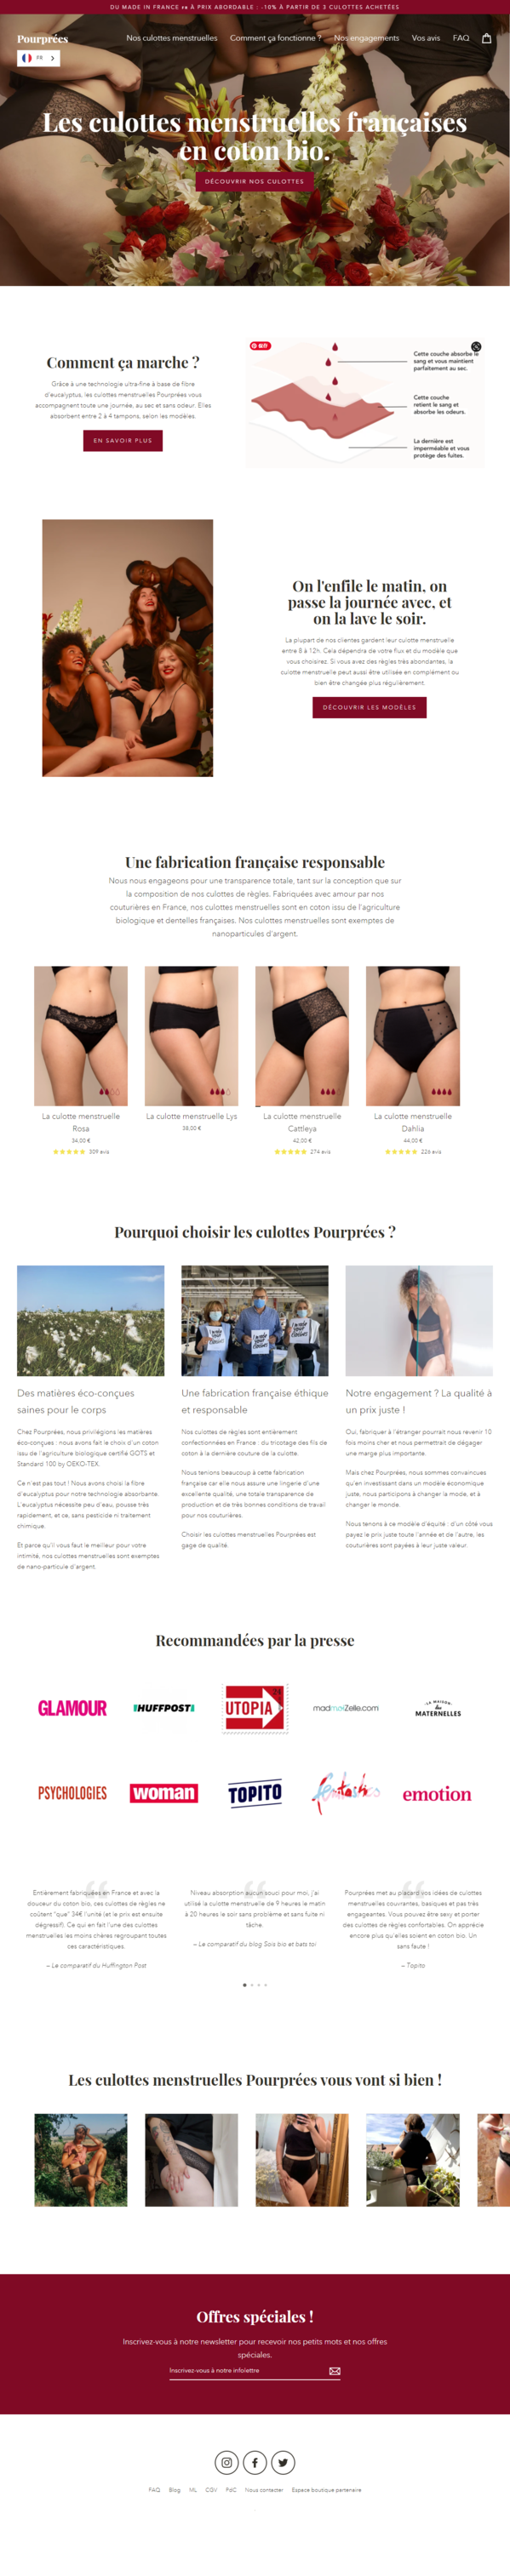 les culottes menstruelles fabriquées en France_ - www.pourprees.fr.png